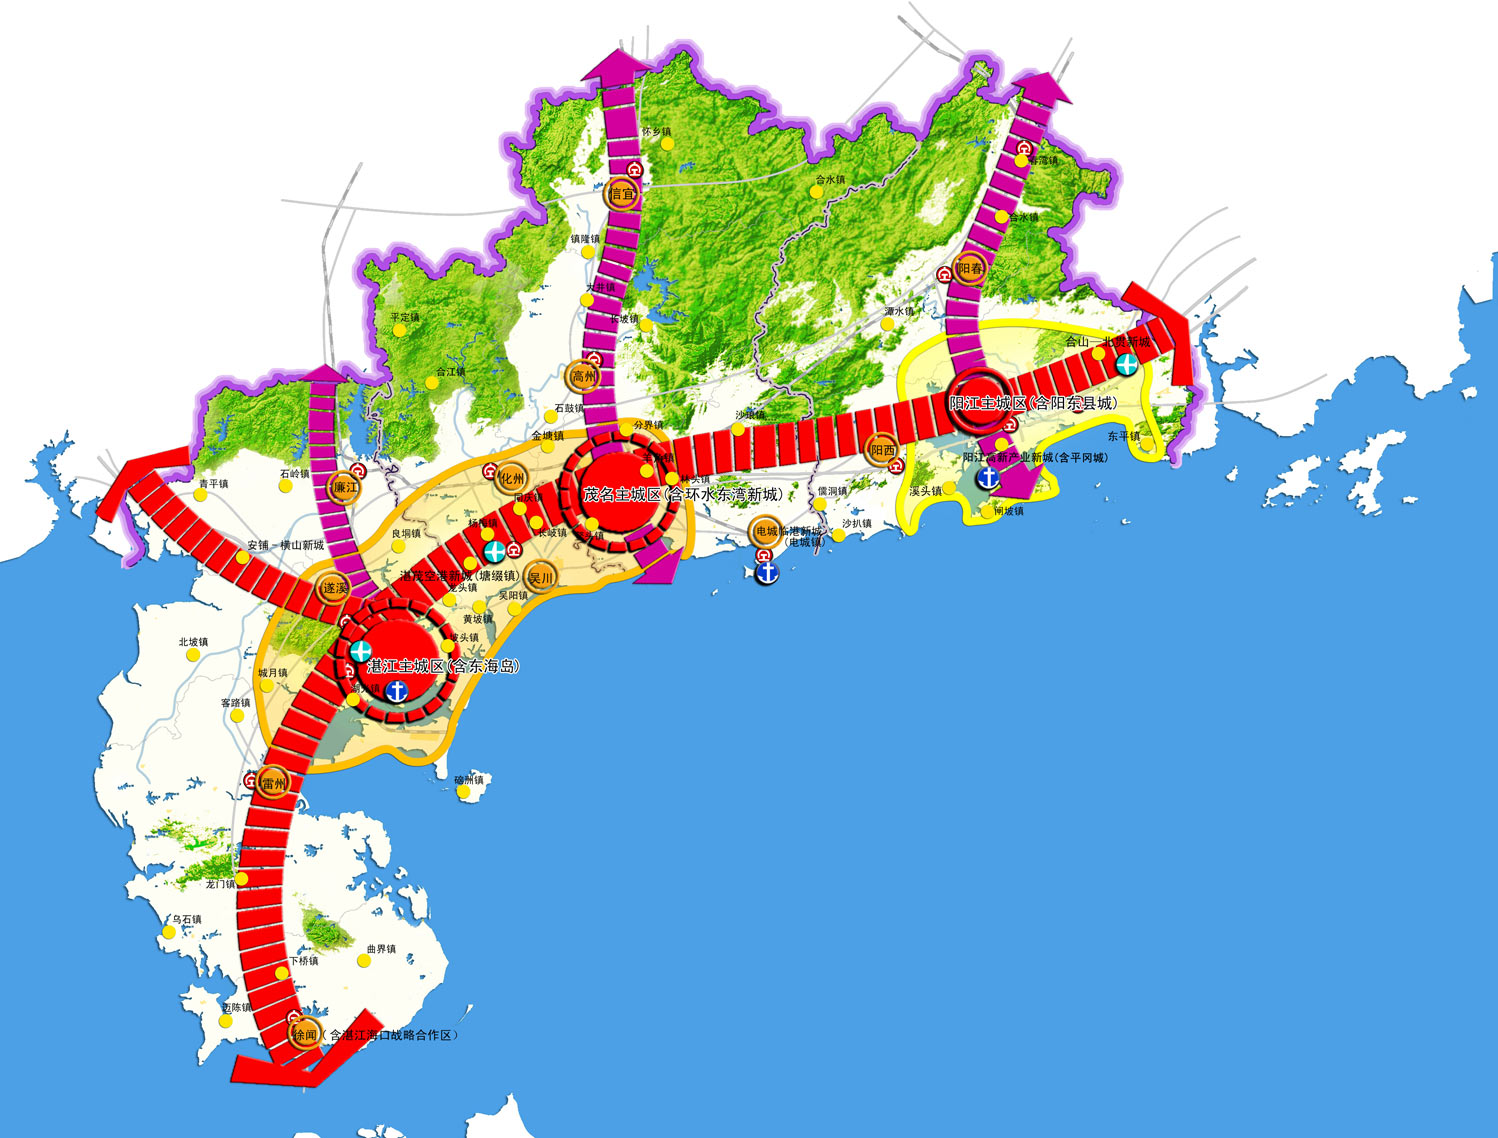 粤西城镇群协调发展规划(2011-2020)